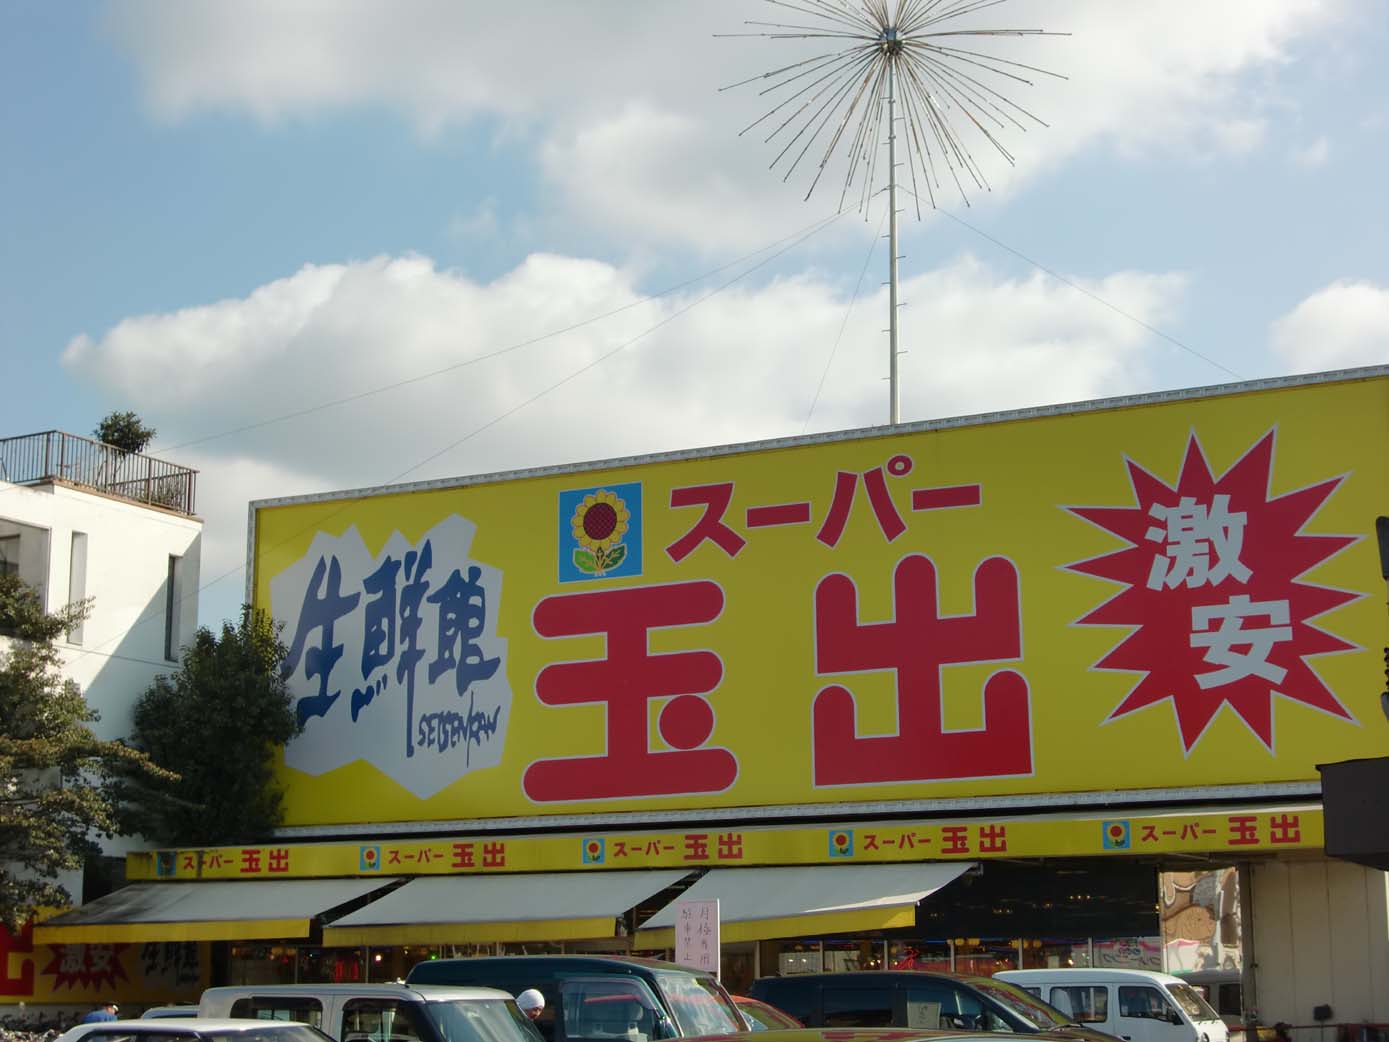 Supermarket. 224m to Super Tamade Amami store (Super)